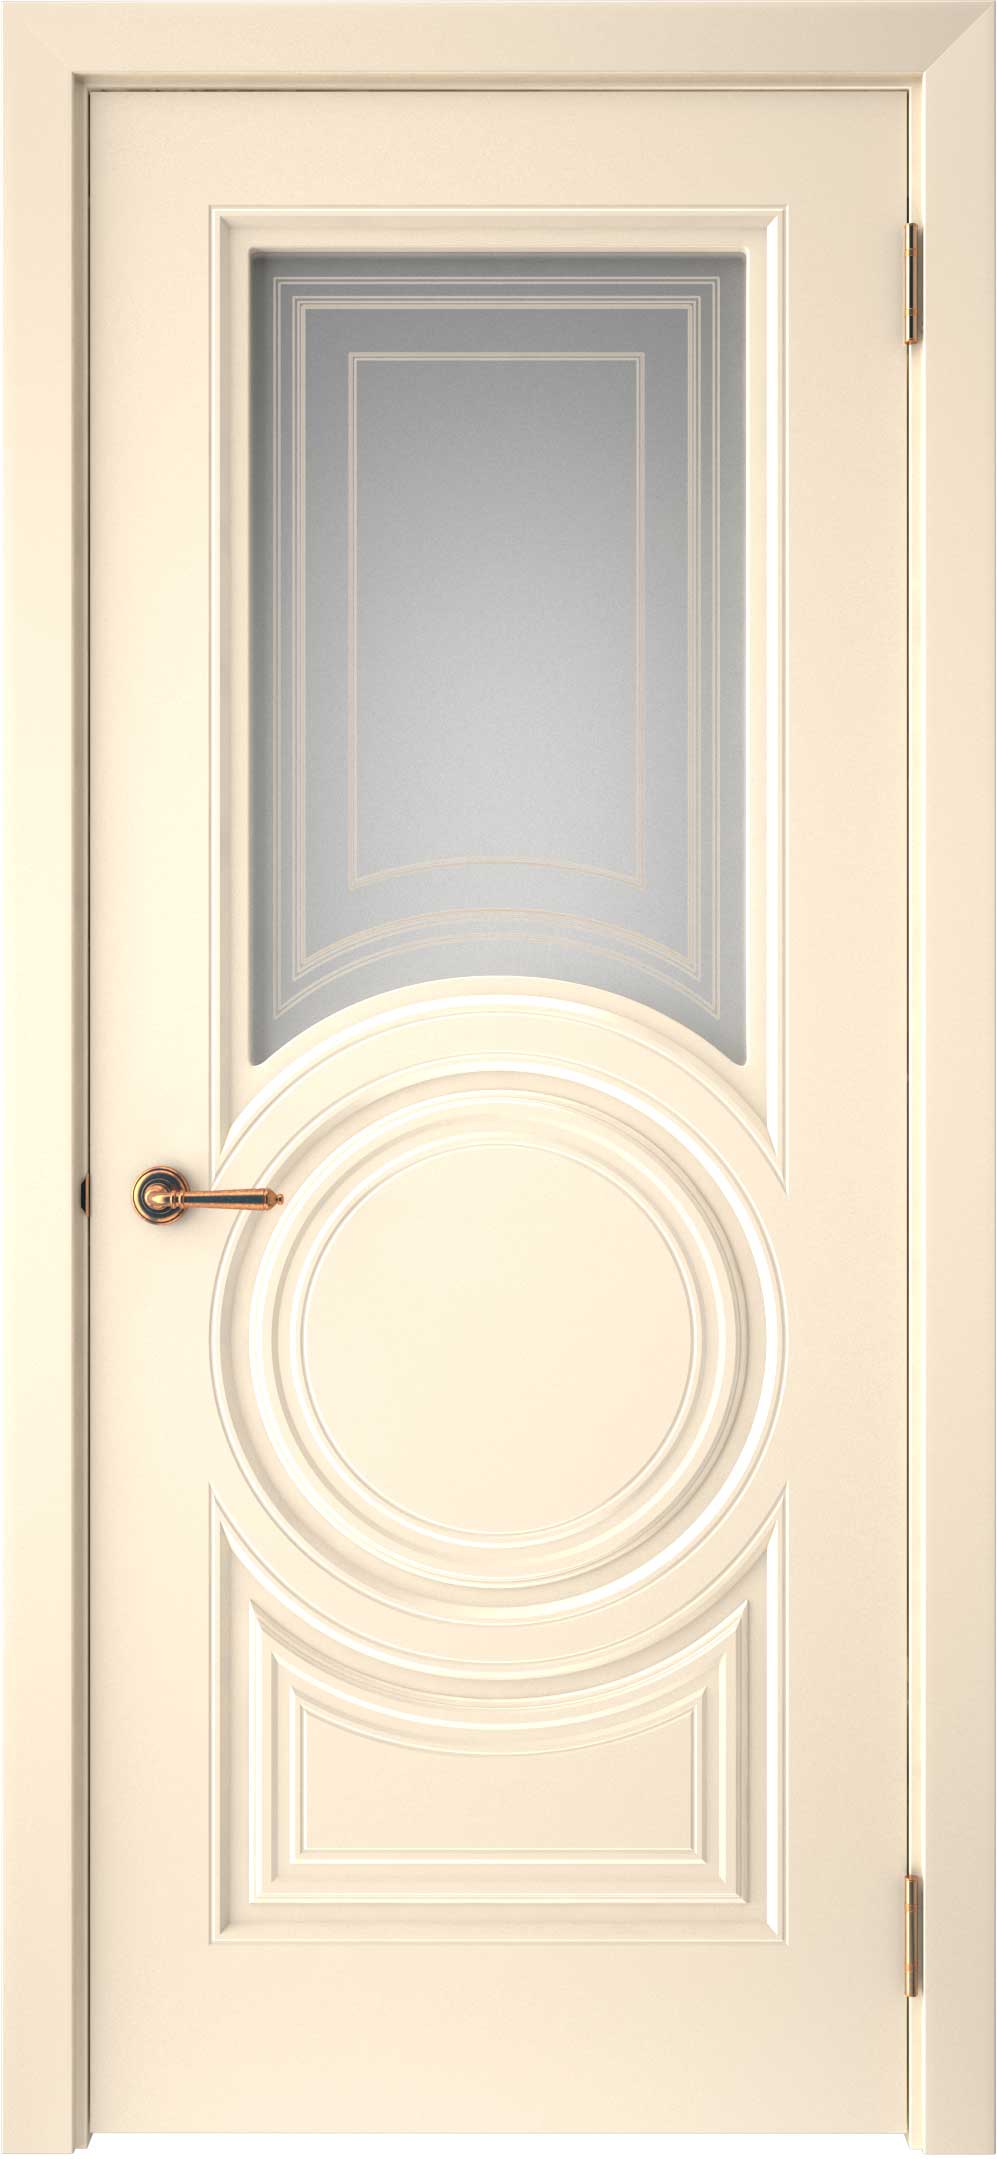 Двери крашеные (Эмаль) ТЕКОНА Смальта-45 со стеклом Ваниль ral размер 200 х 80 см. артикул F0000093322